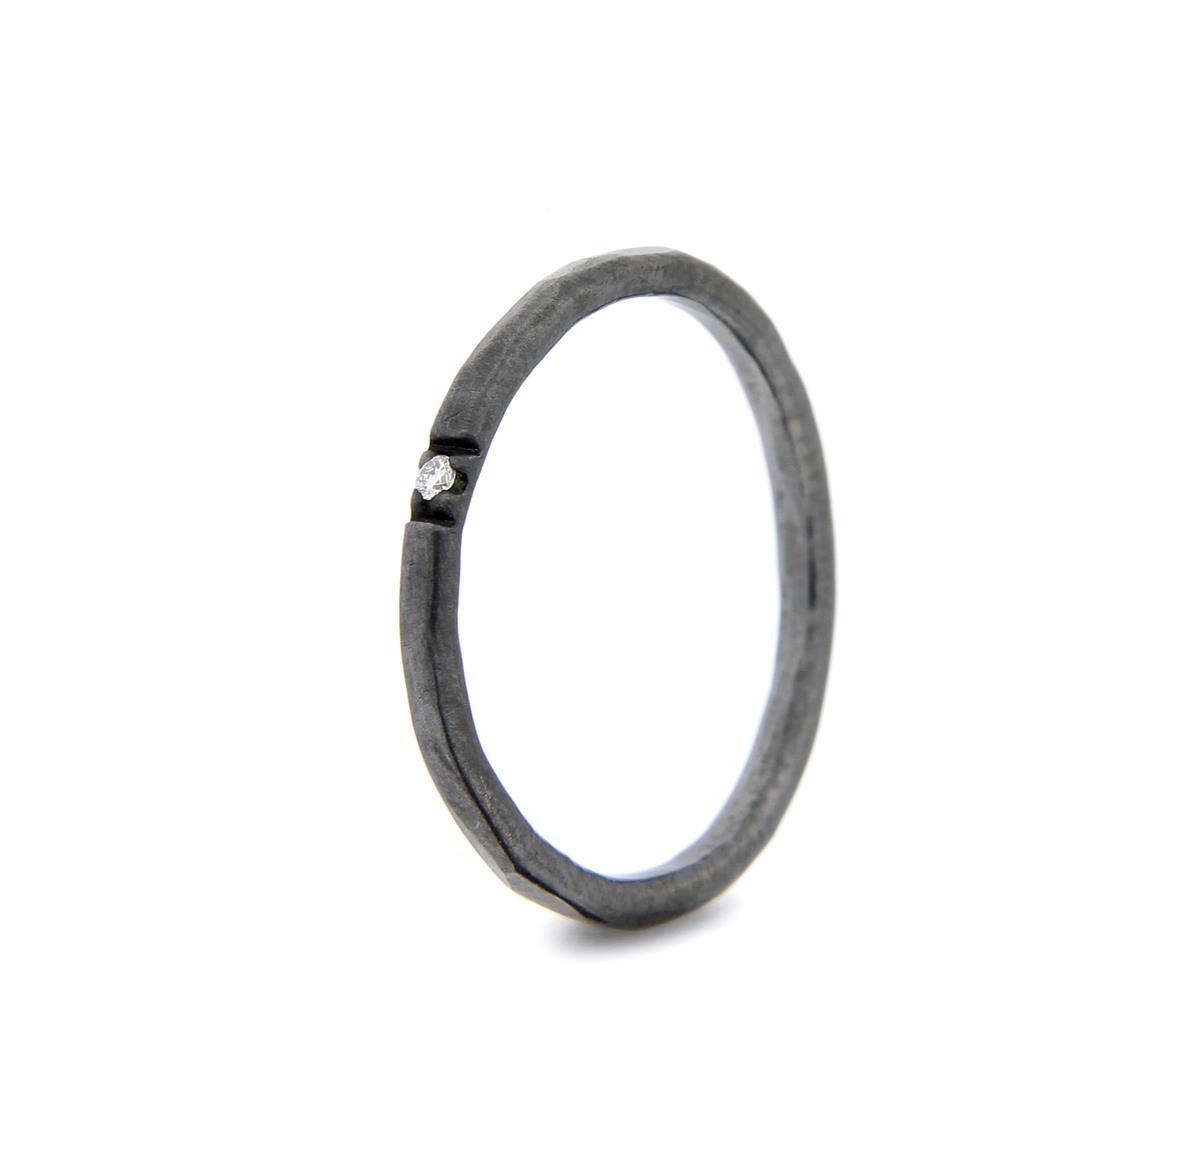 Katie g. Jewellery - Hammered Ring 1,5mm - sterling silber oxidiert + 1 brillant - Ring um 60€ und pro Brillant 70€ - mehrere Brillanten auch möglich